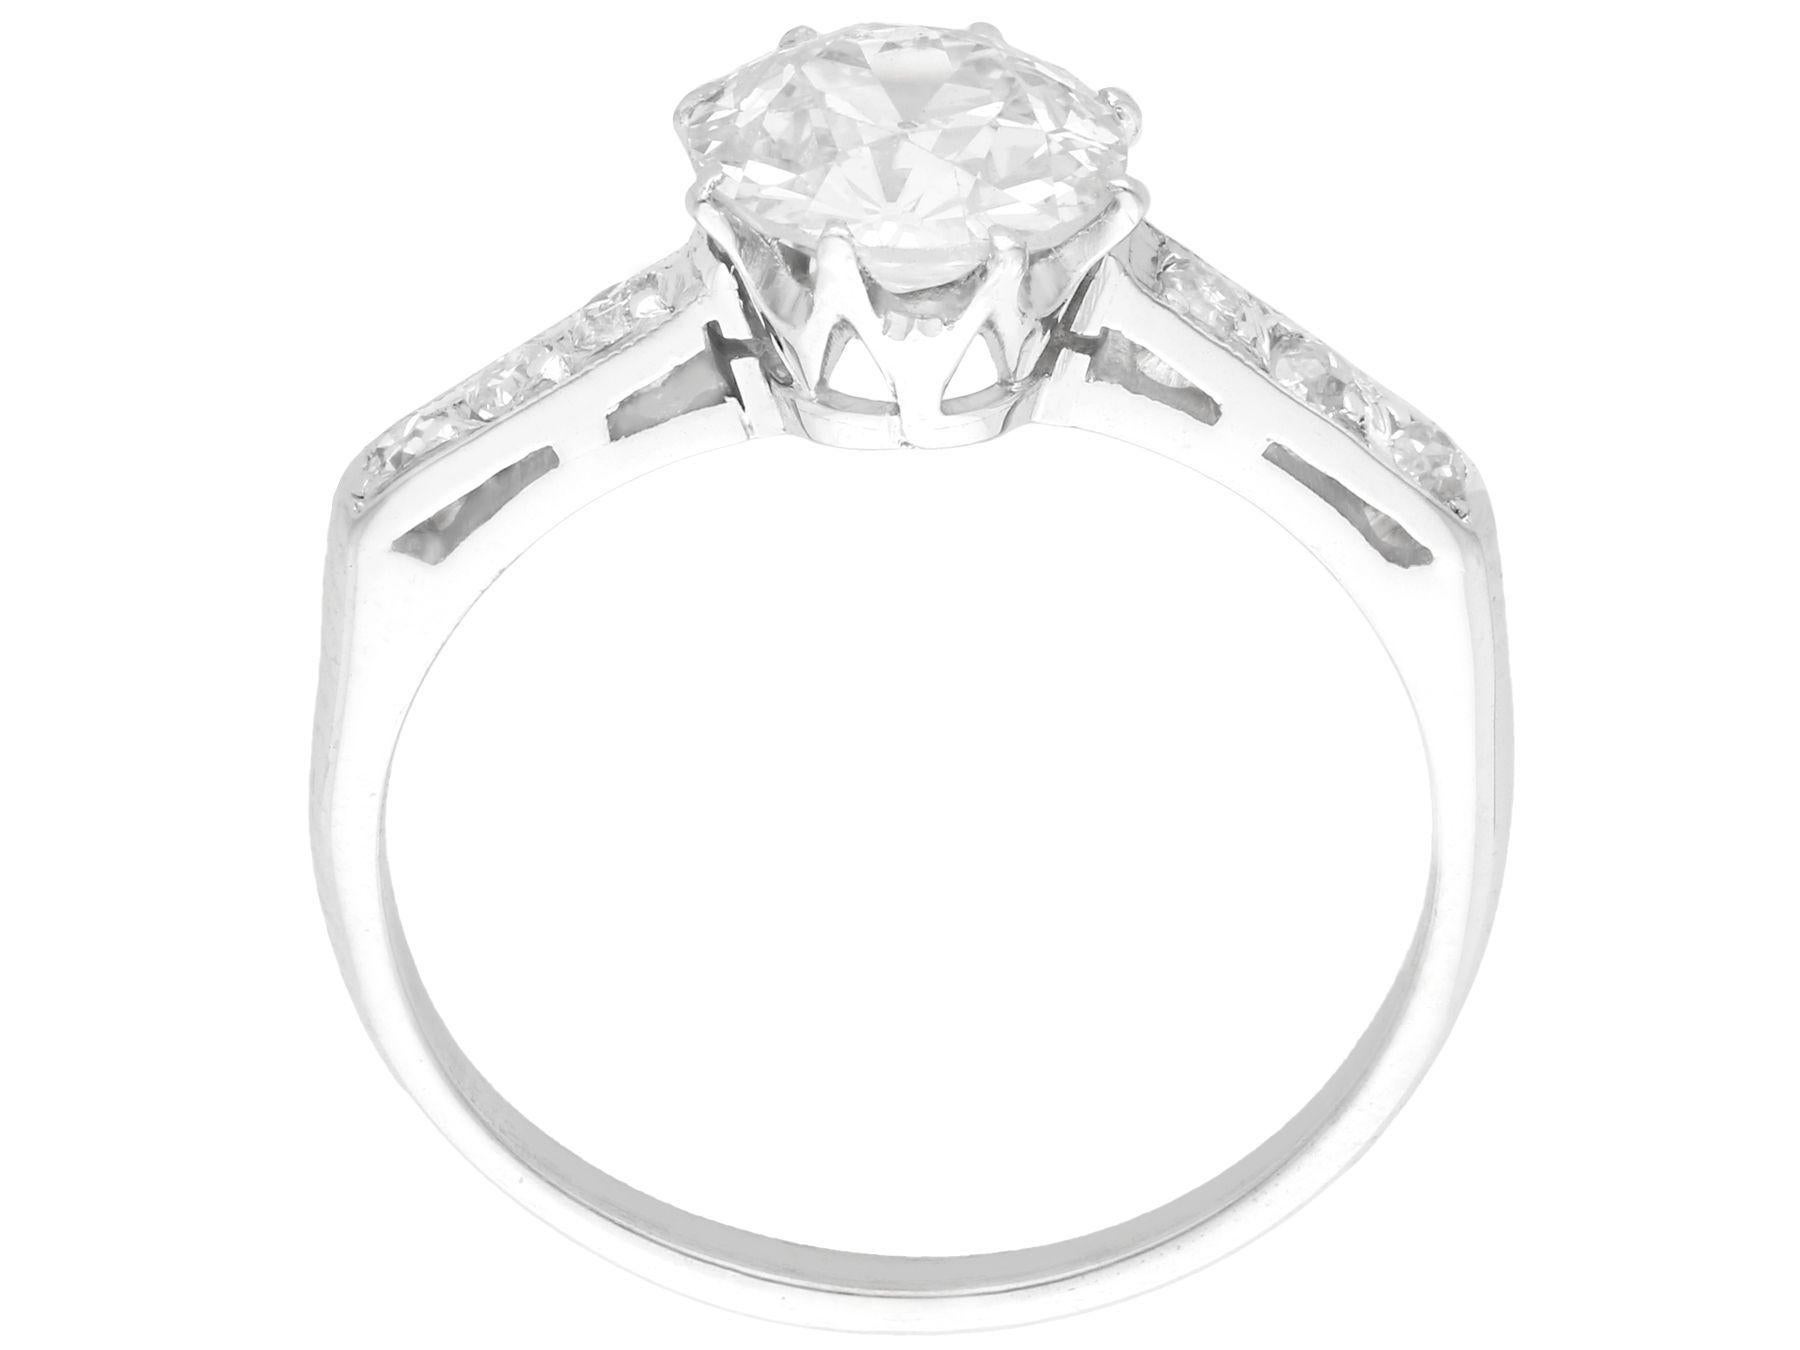 1940s princess ring